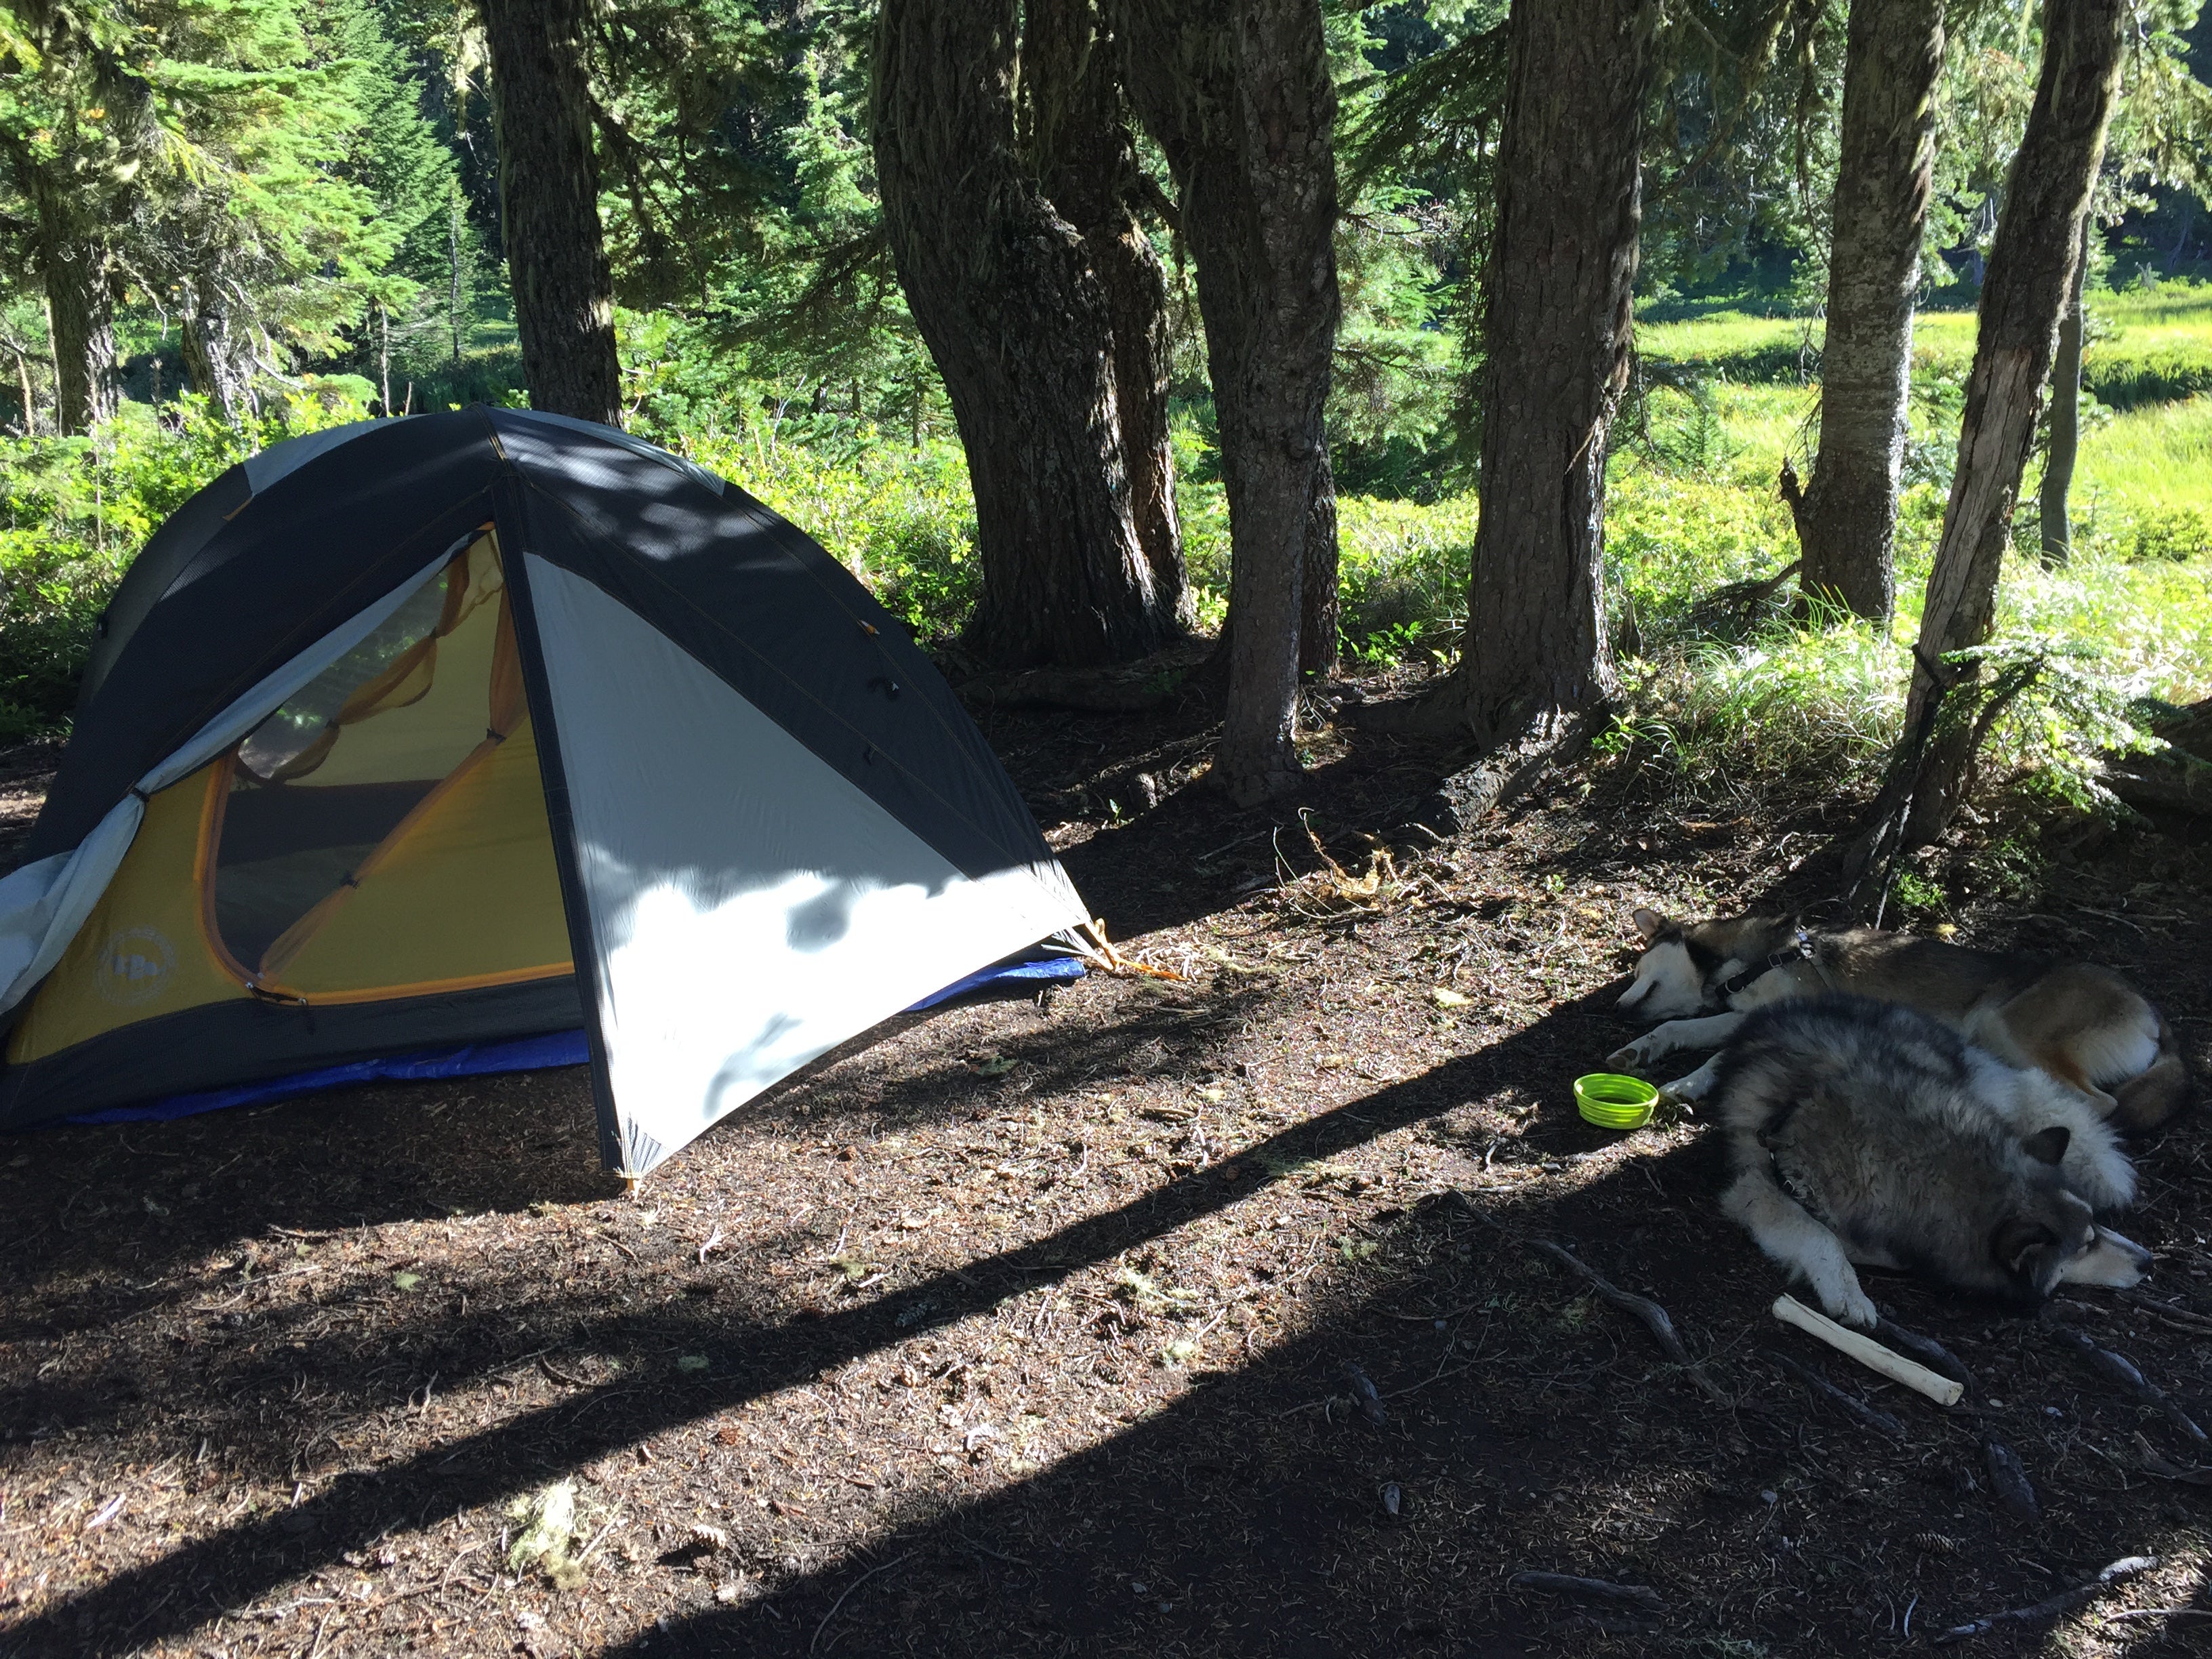 Our campsite.